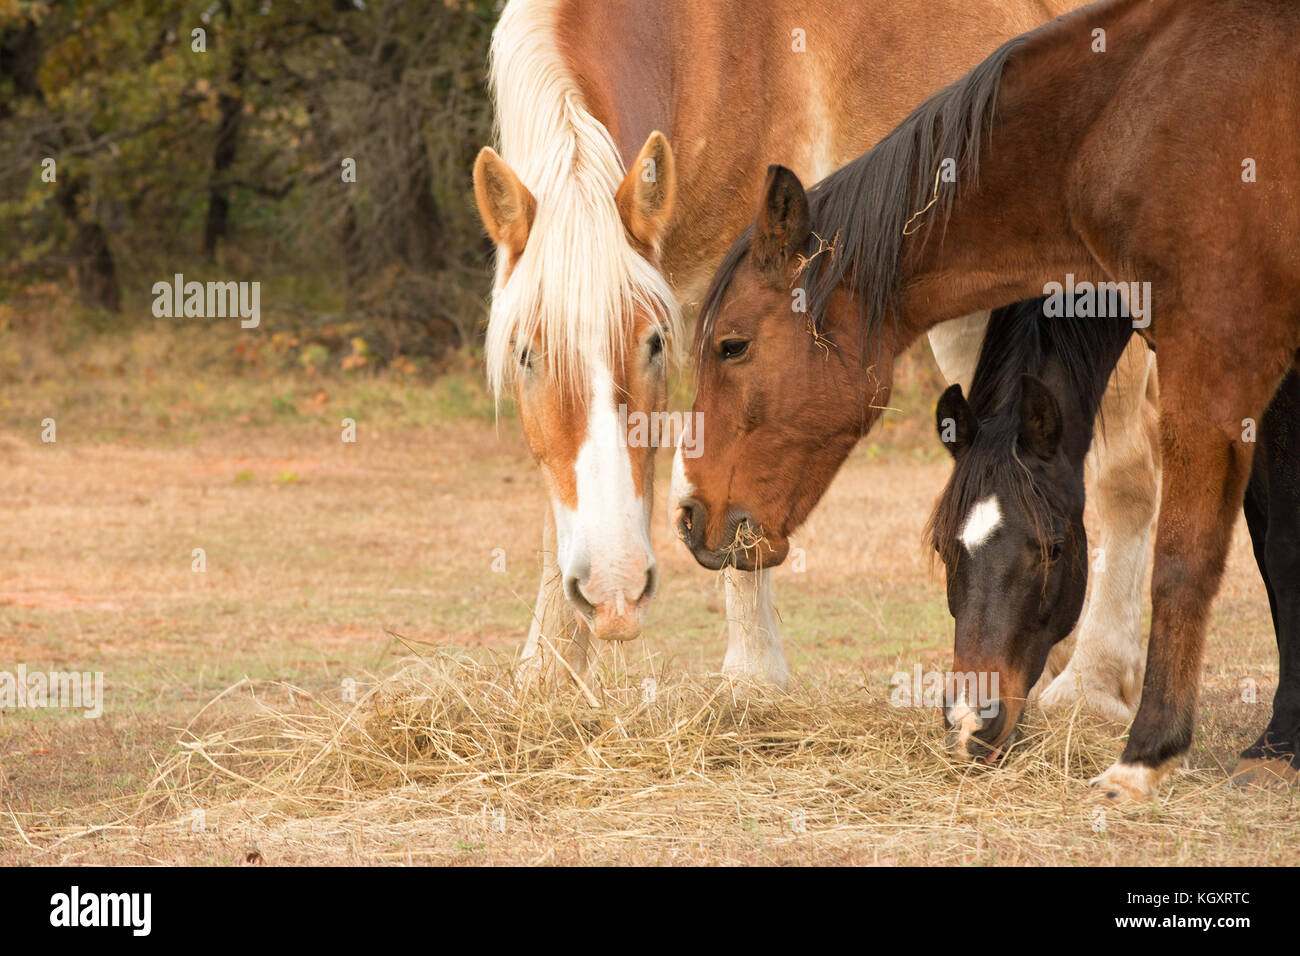 Trois chevaux de manger le foin du sol dans les pâturages, debout près de l'un l'autre Banque D'Images